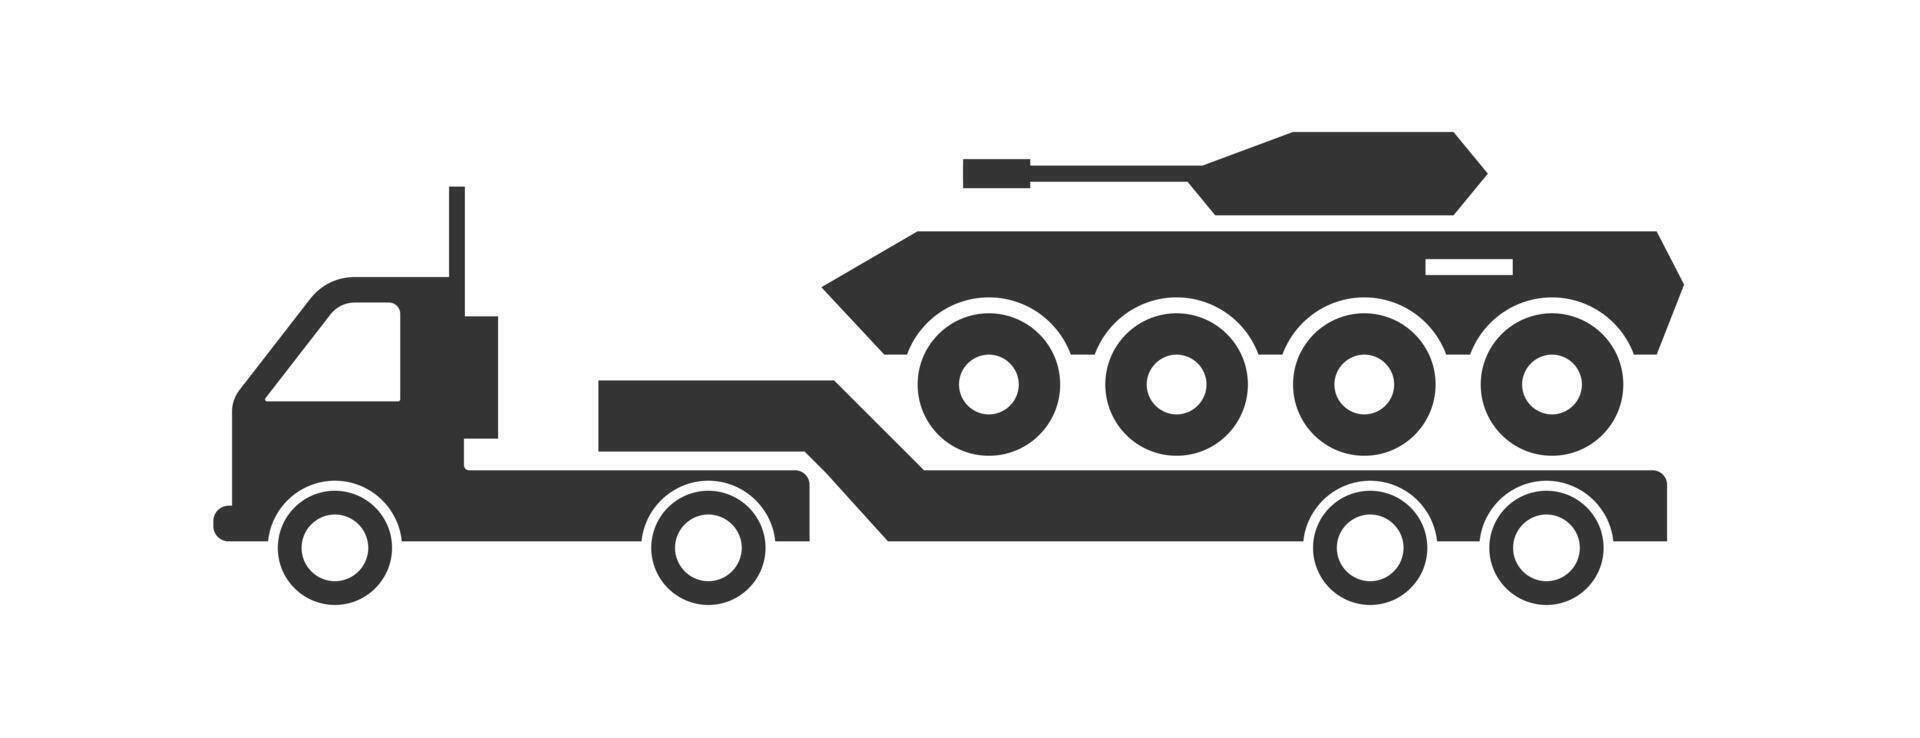 blindé personnel transporteur sur une un camion icône. vecteur illustration.